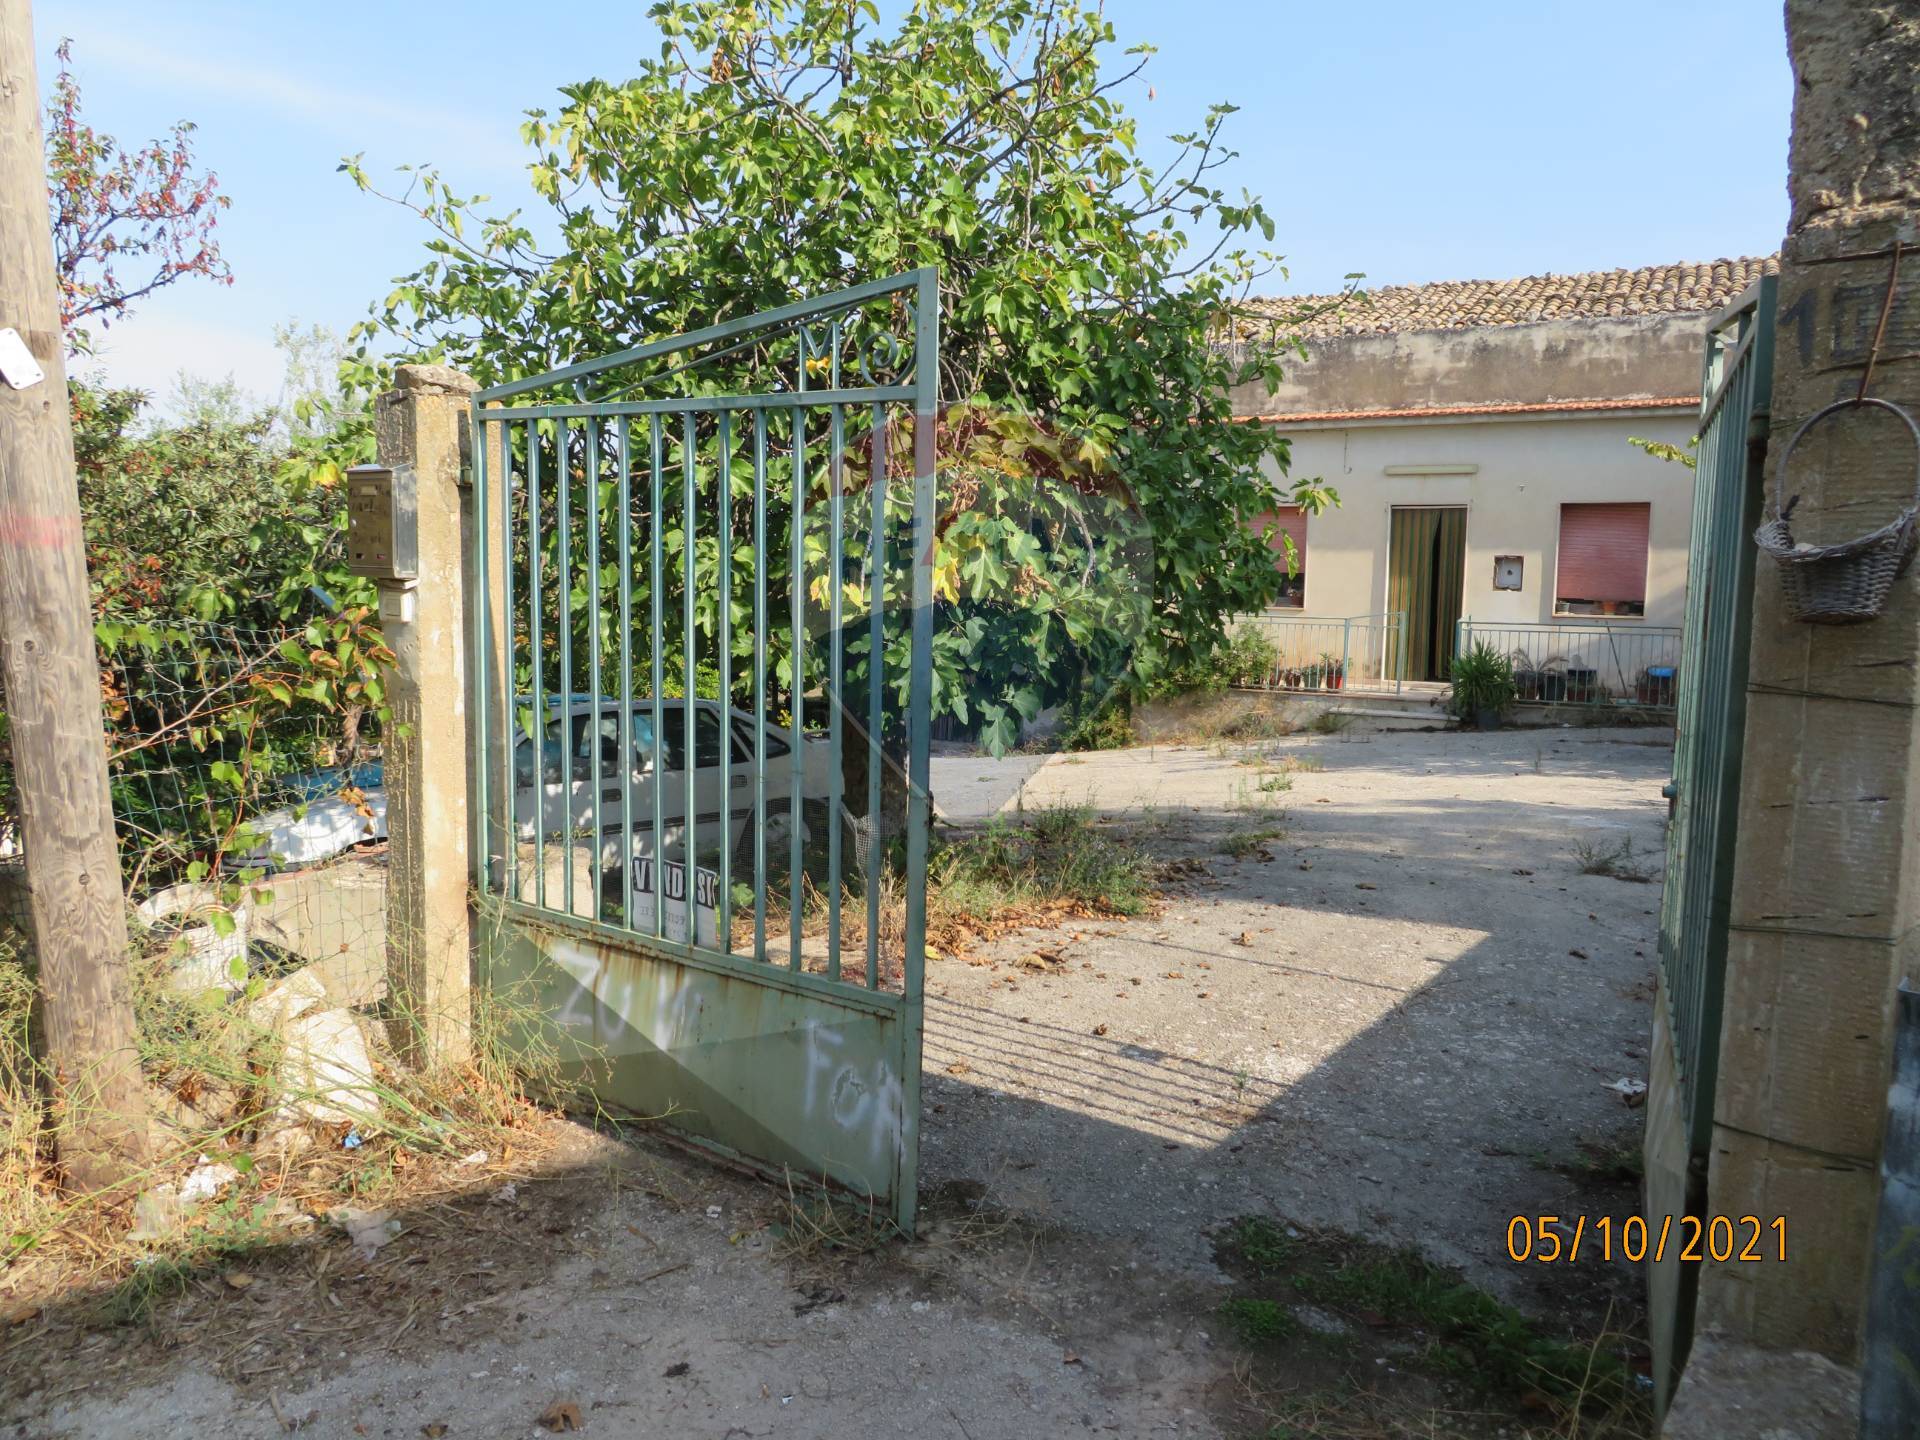 Rustico / Casale in vendita a Chiaramonte Gulfi, 8 locali, prezzo € 180.000 | CambioCasa.it